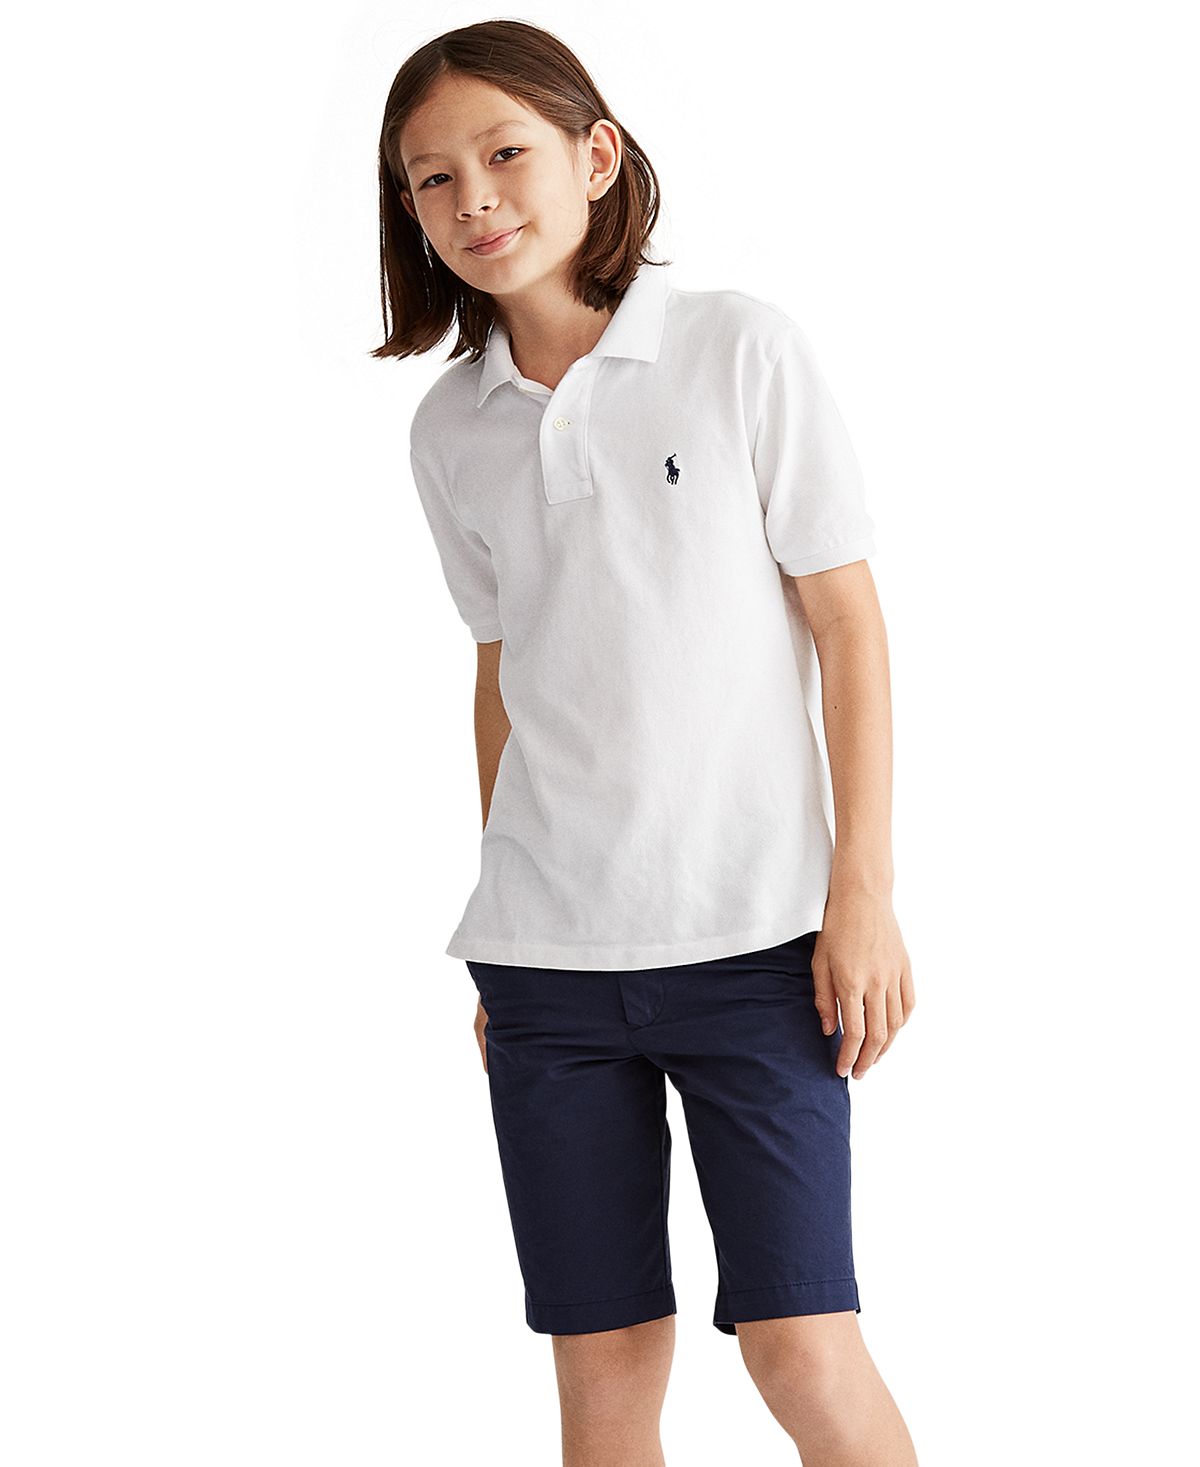 цена Рубашка-поло из хлопковой сетки с логотипом для мальчиков Big Boys Polo Ralph Lauren